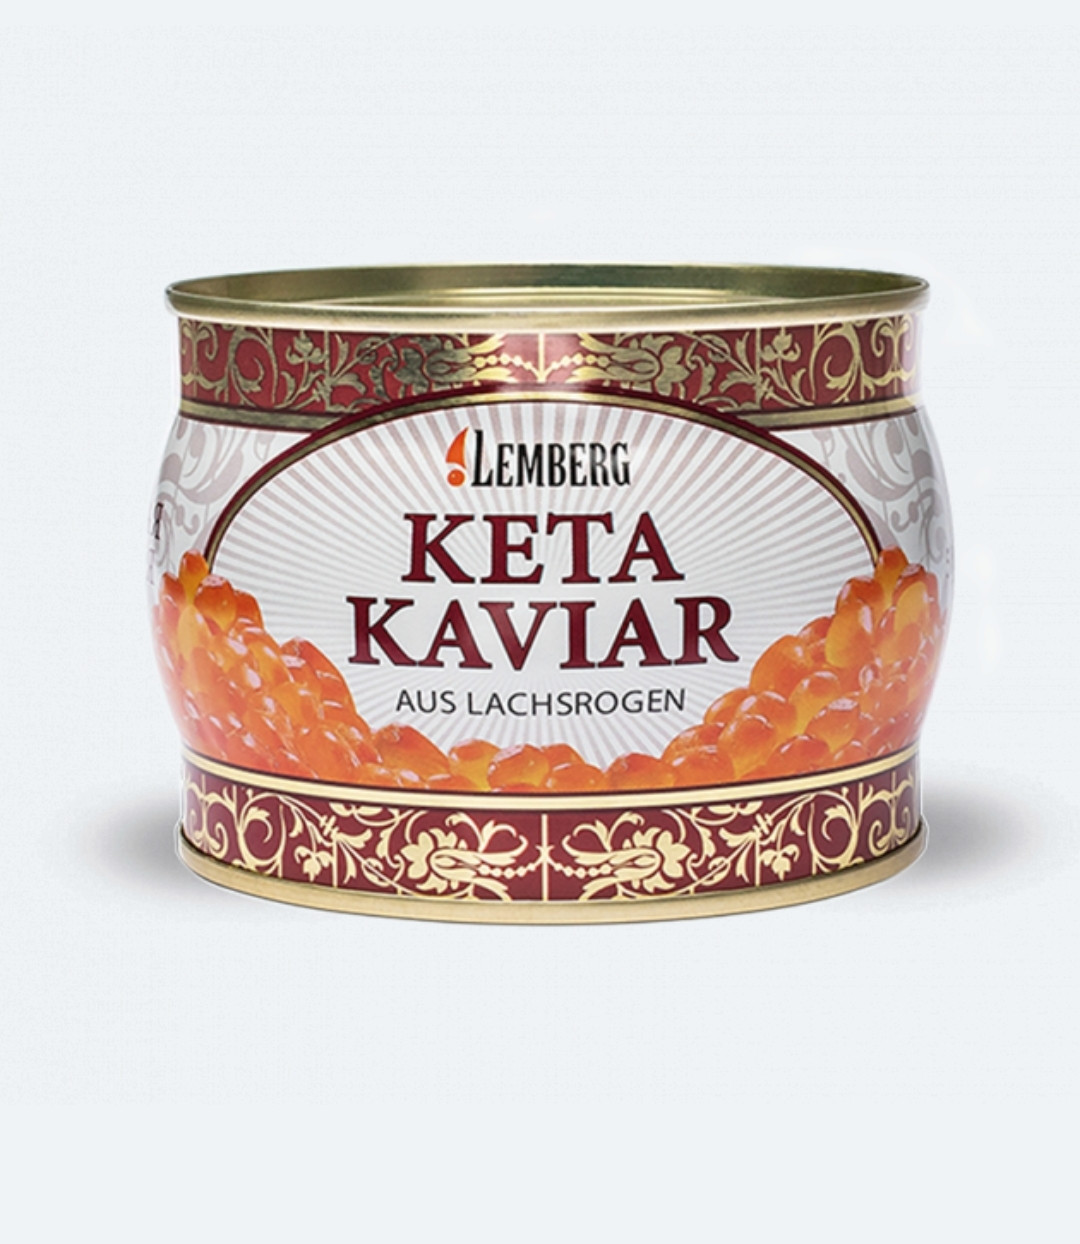 Ікра червона грубозерниста кети Lemberg Keta — Lachskaviar 500 г